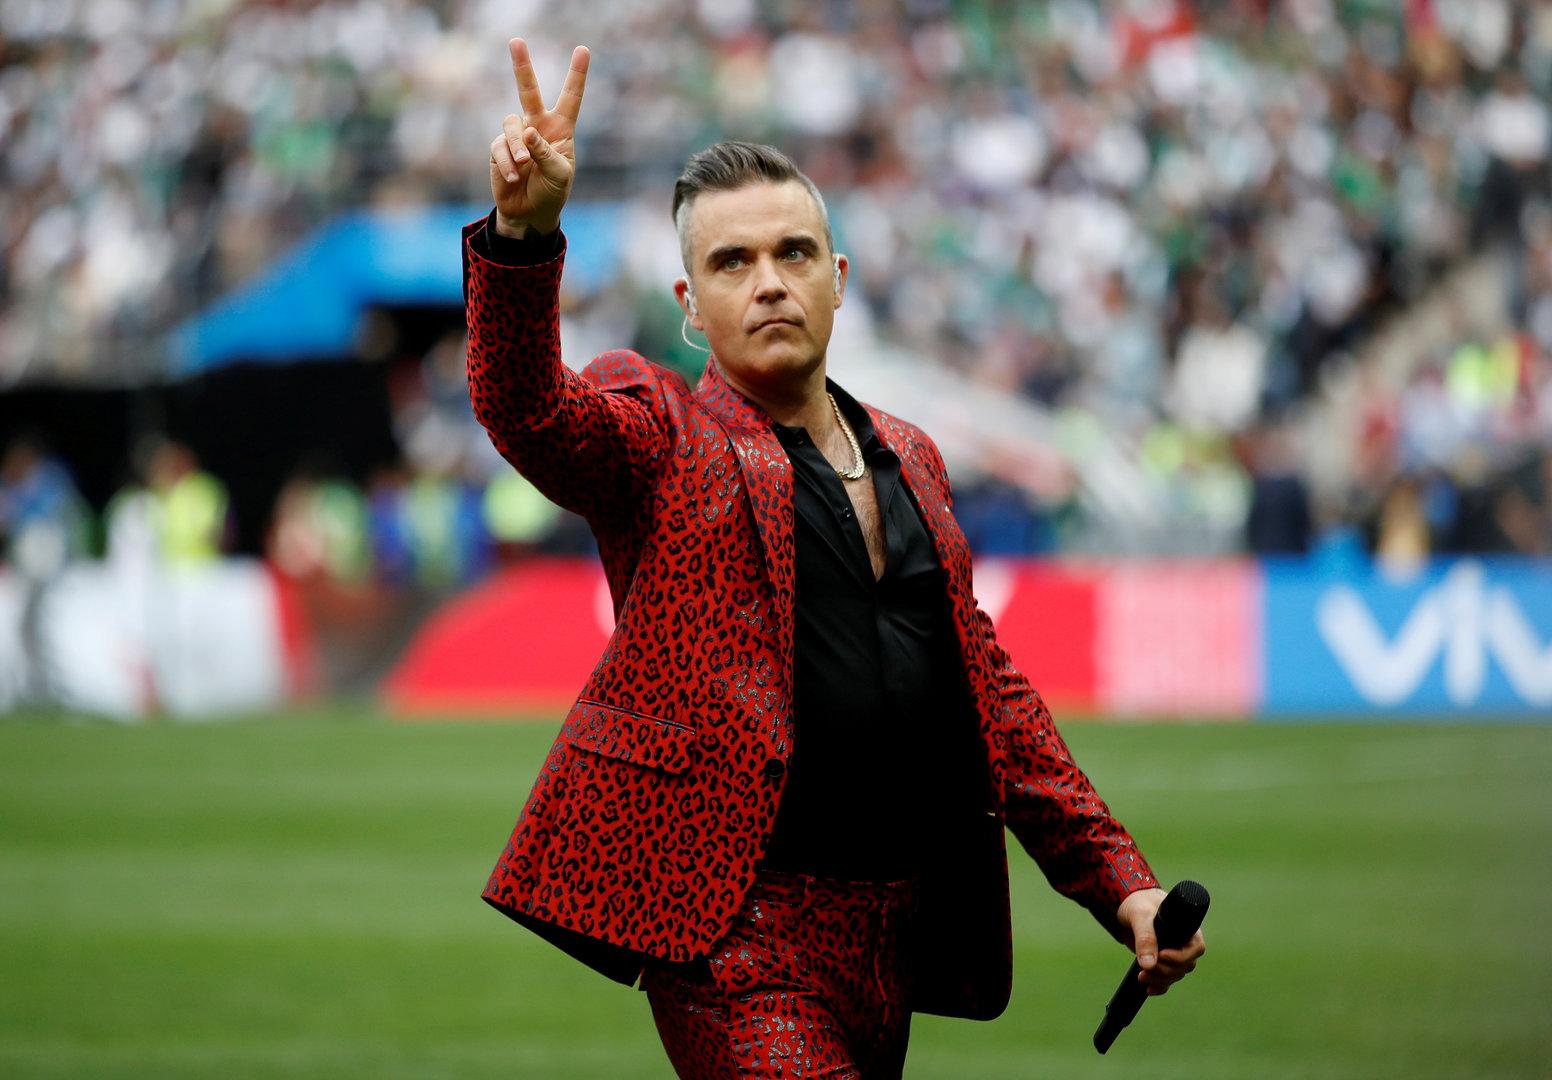 Wegen Corona: Robbie Williams hatte so große Angst, dass er zu Gott betete